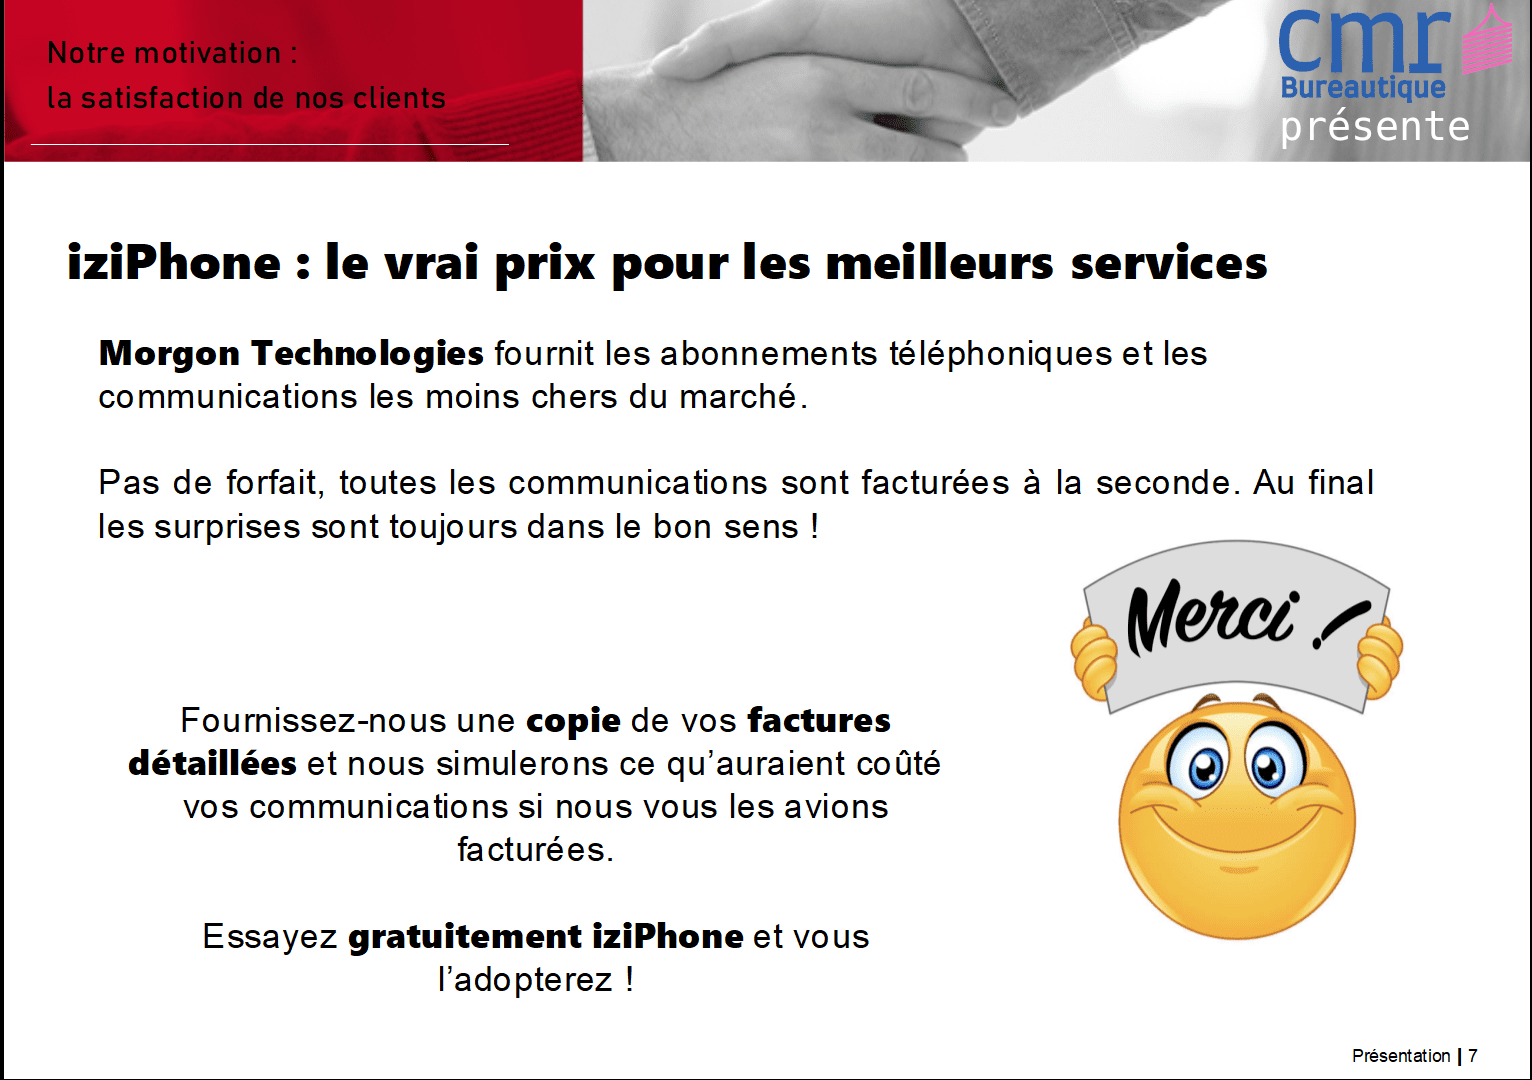 CMR Bureautique à Bourgoin-Jallieu, Isère, présente iziPhone, le forfait le moins cher du marché.